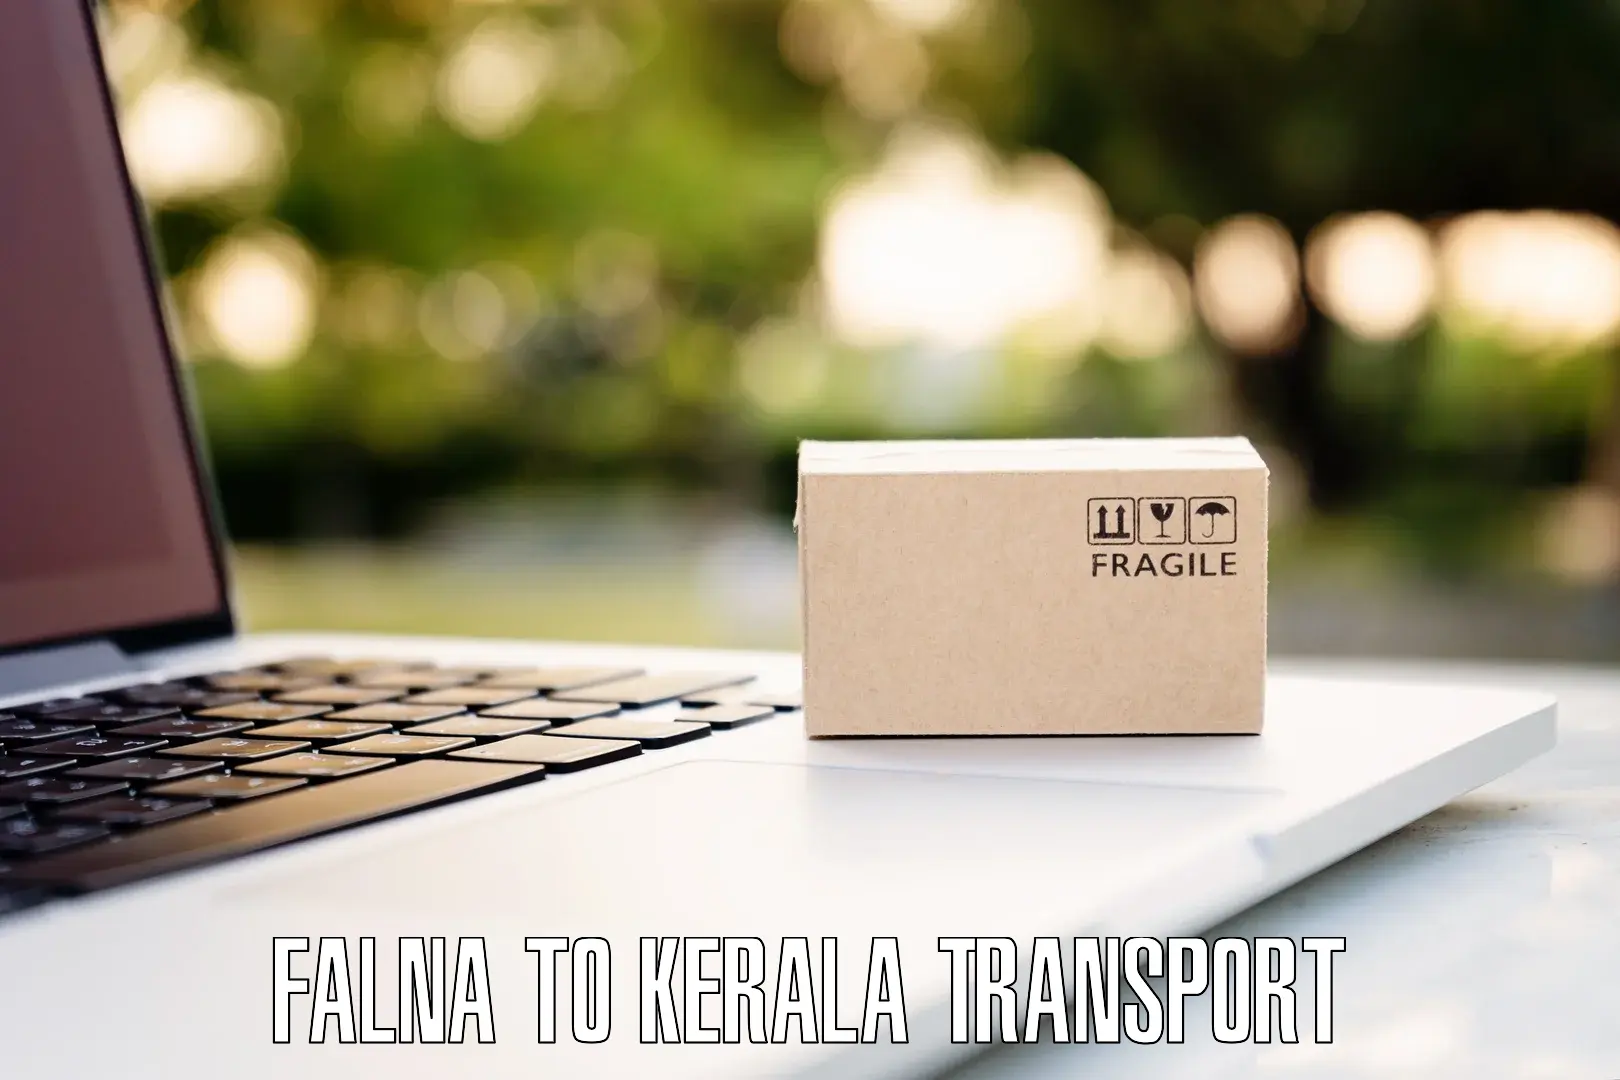 Daily parcel service transport Falna to Pallikkara